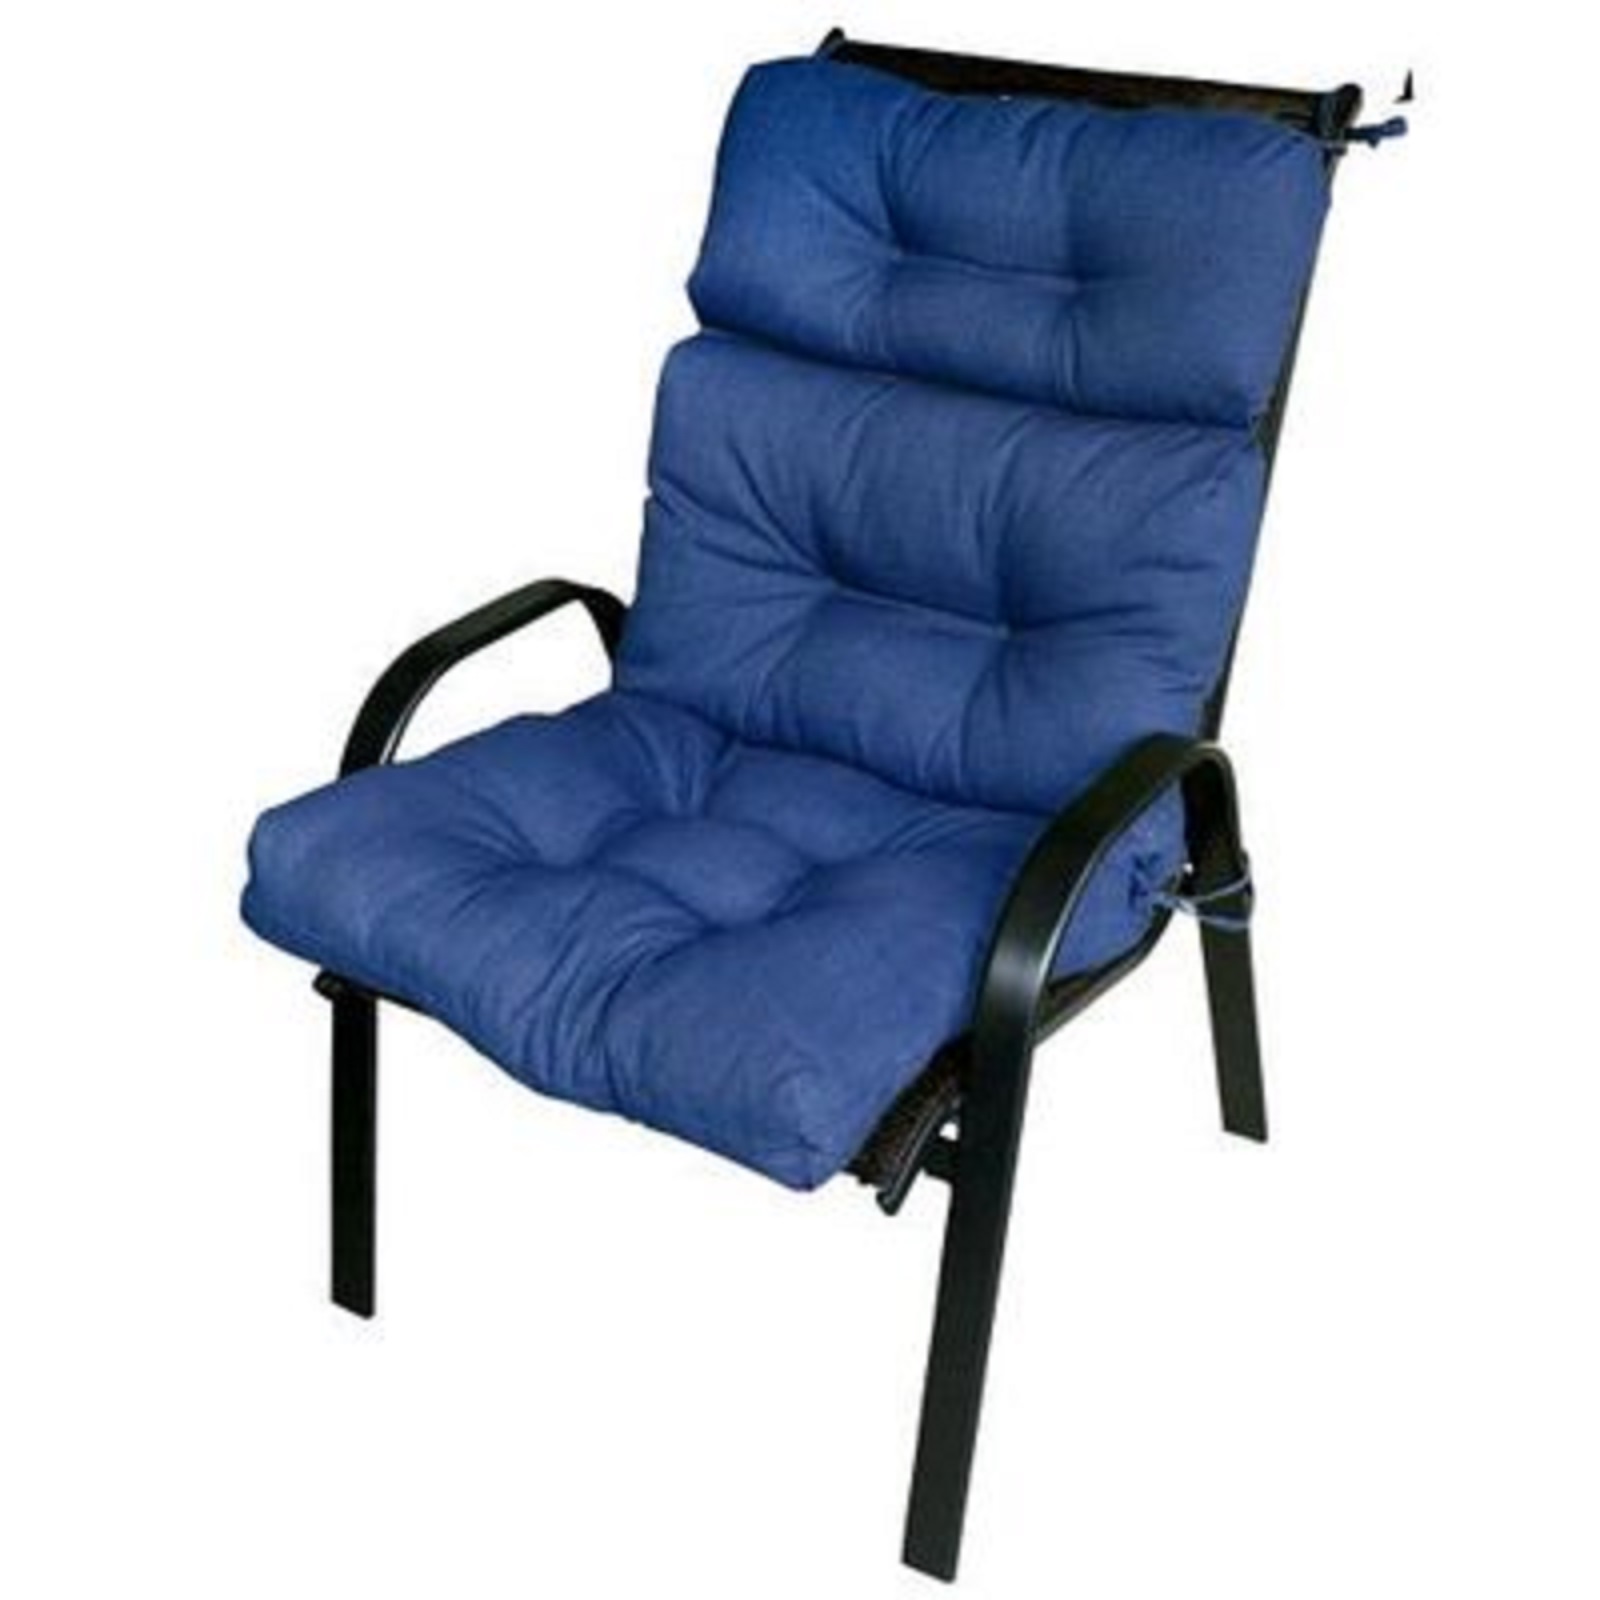 Outdoor High Back Chair Cushion, Capri Blue